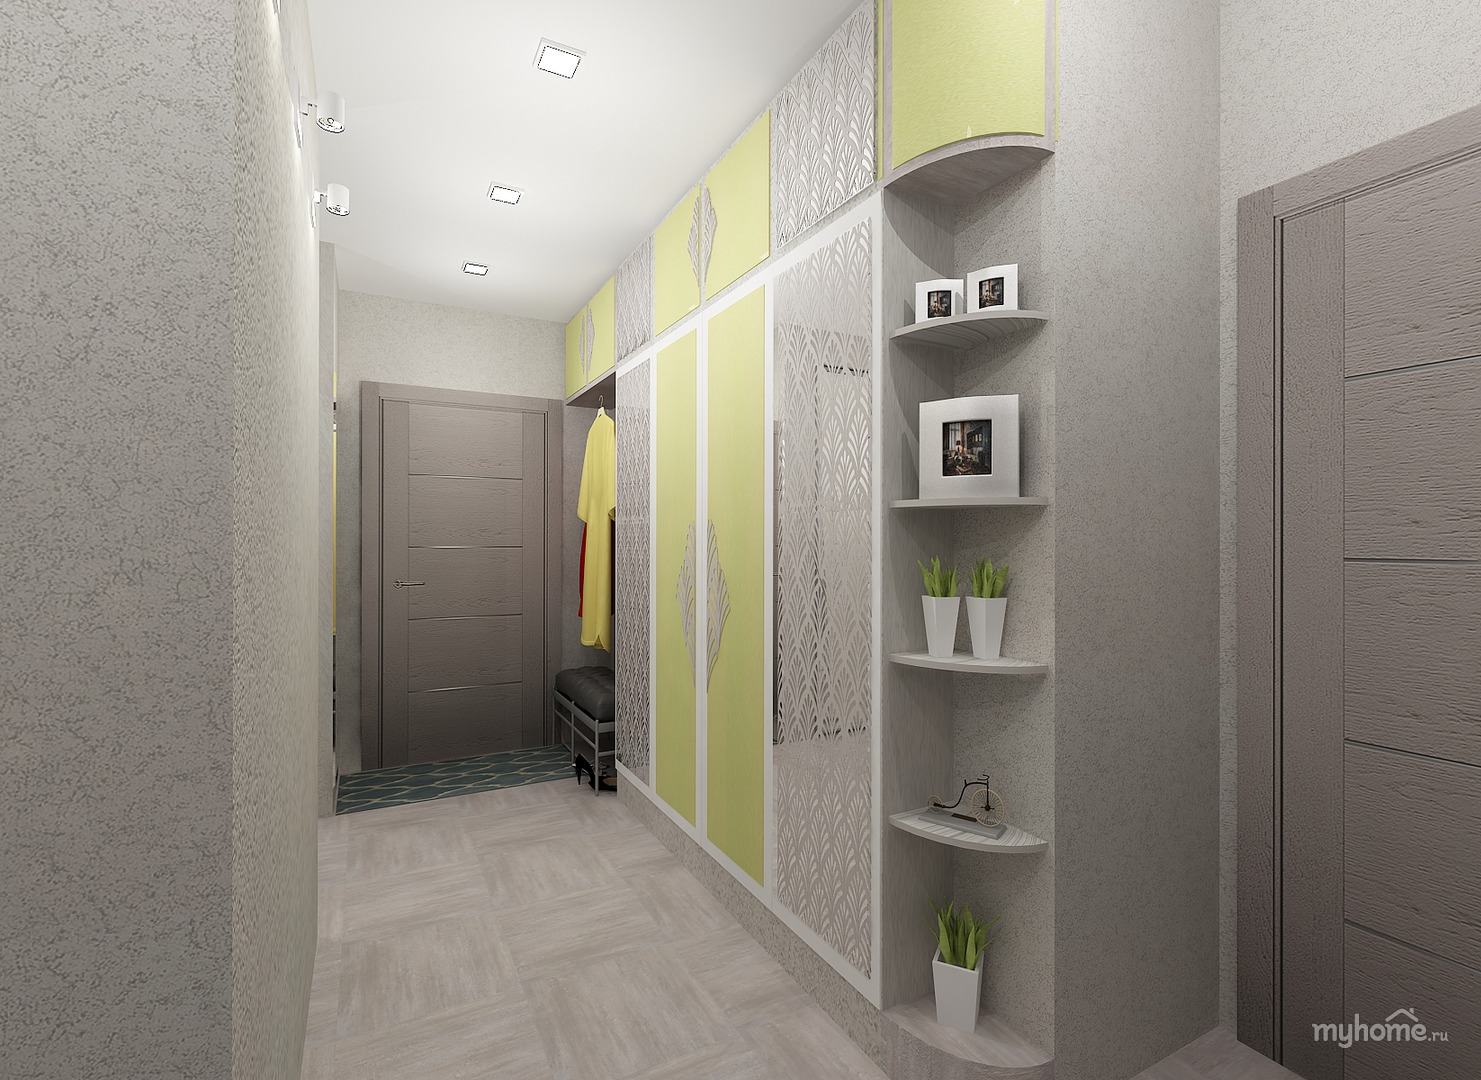 Какой выбрать дизайн прихожей в двухкомнатной квартире - отделка, свет и декорирование????